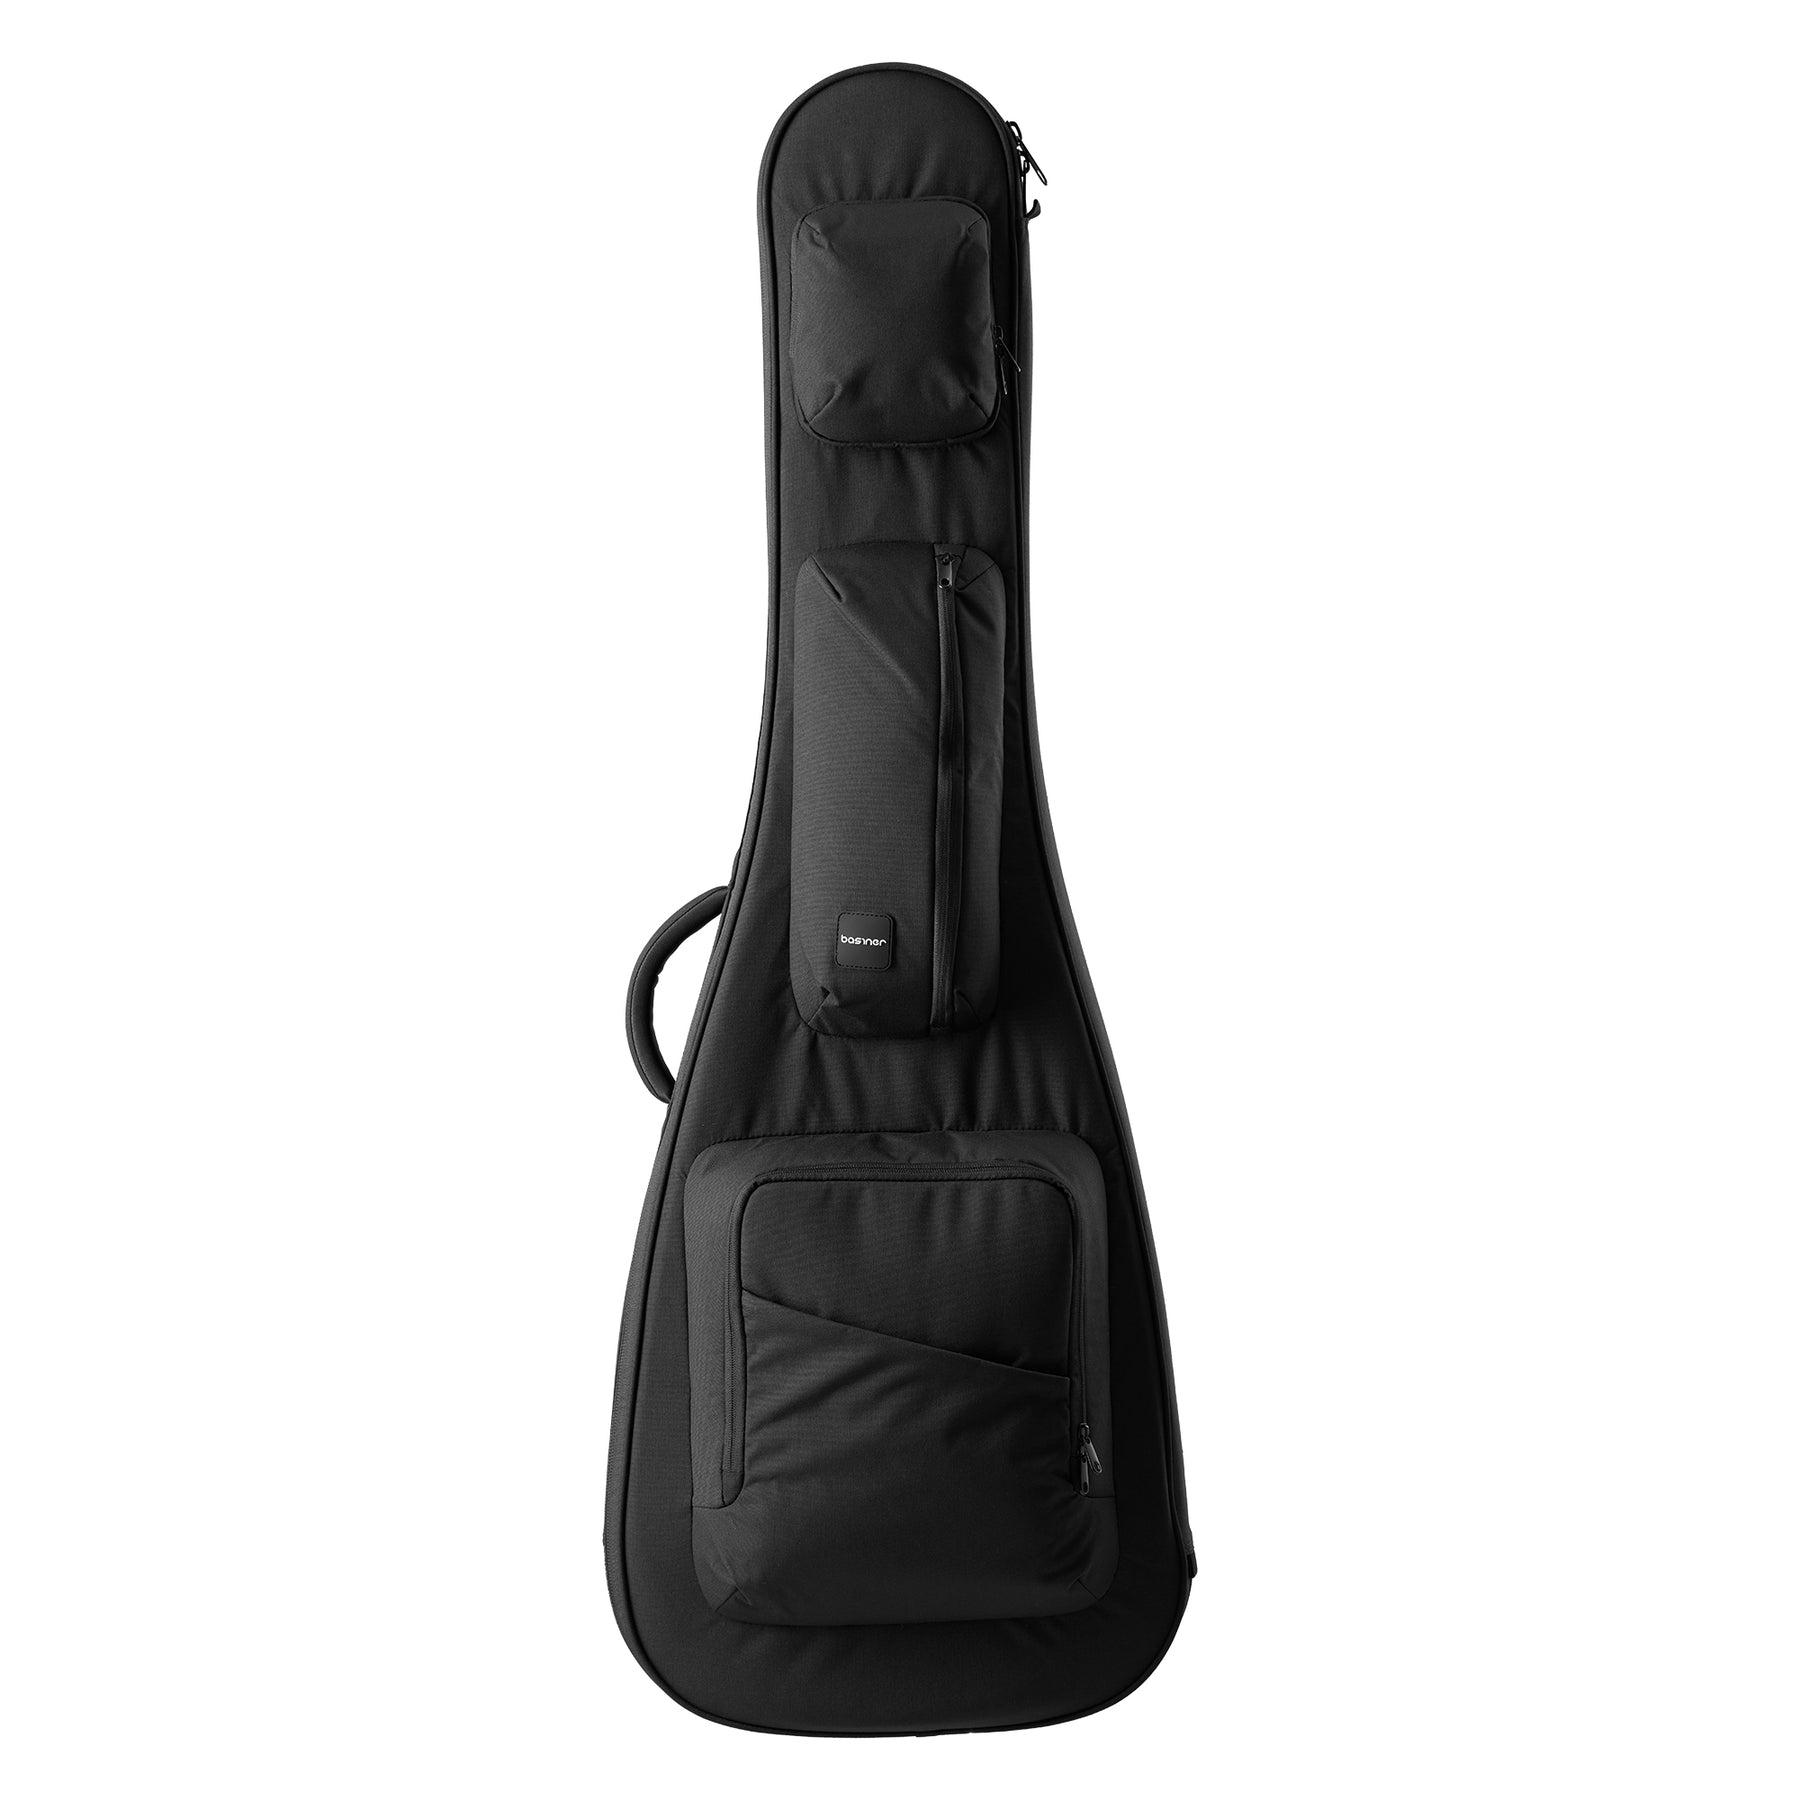 超激安新品 basiner ACME-AC-NB (Neo Black) 新品  アコースティックギター用セミハードギグケース[ベイシナー][ネオブラック,黒][Acoustic Guitar][Gig Bag,Case]：ギタープラネット 